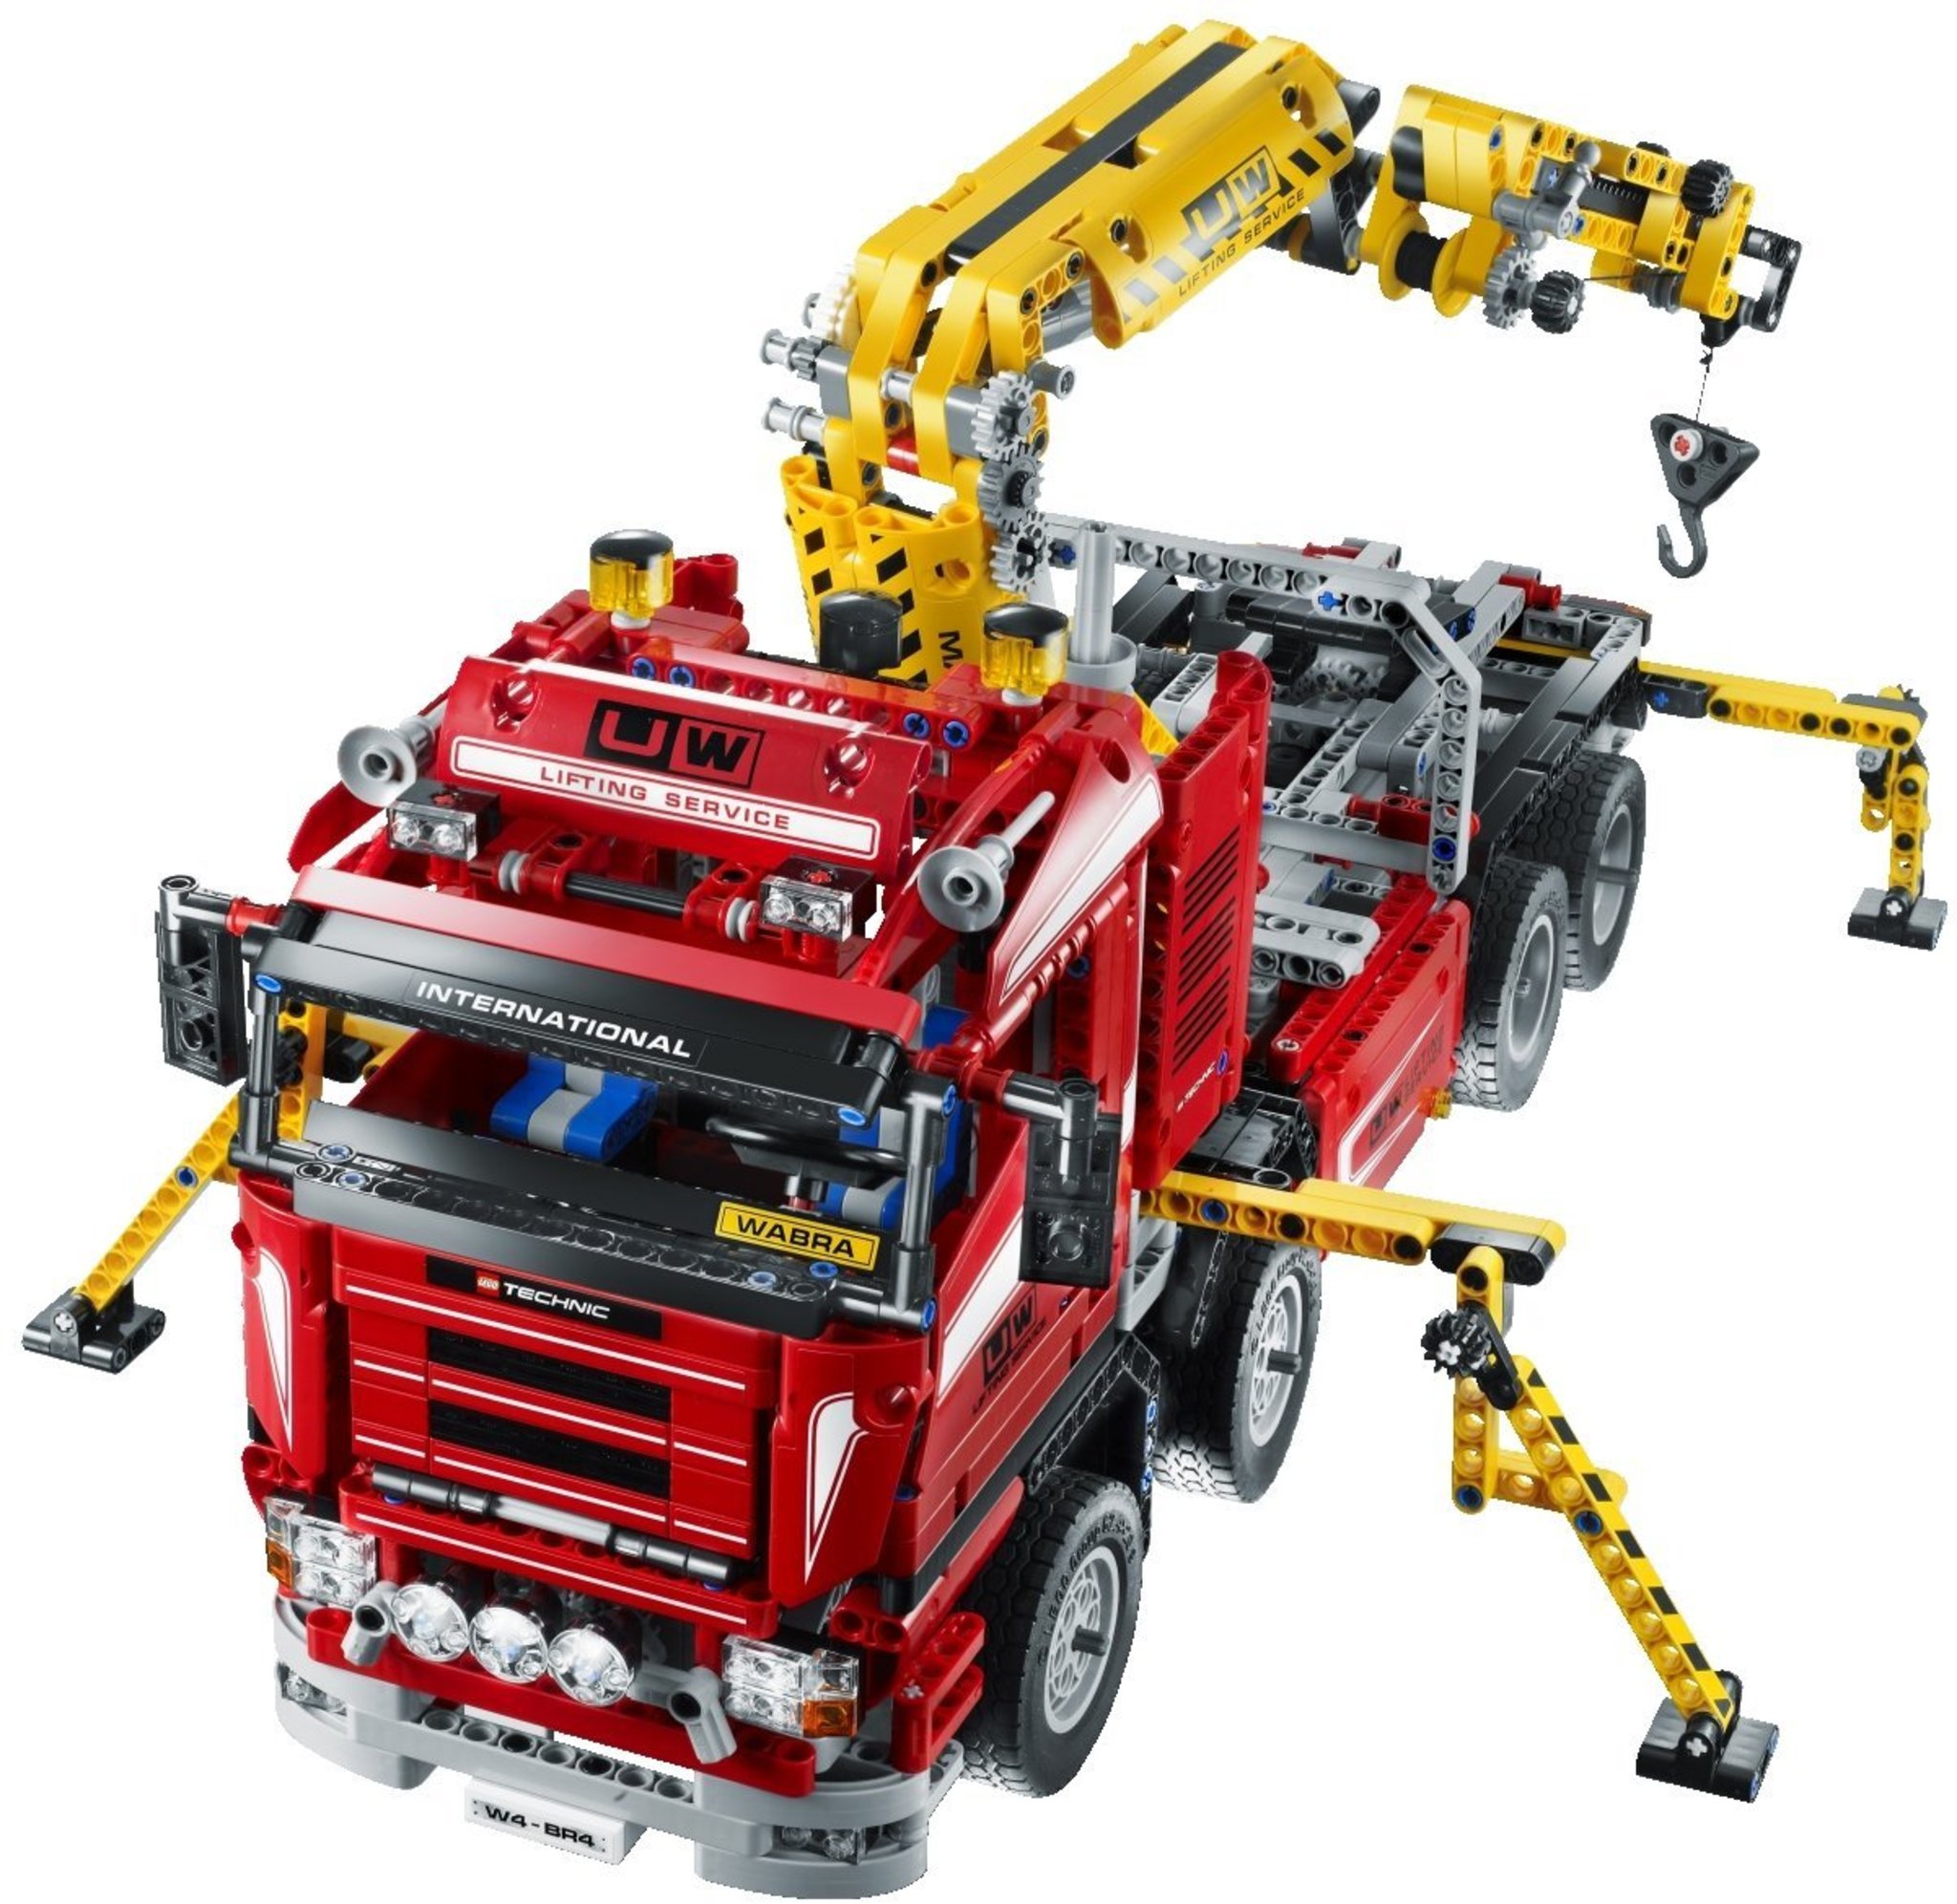 LEGO Technic 8258 - Crane Truck | Mattonito